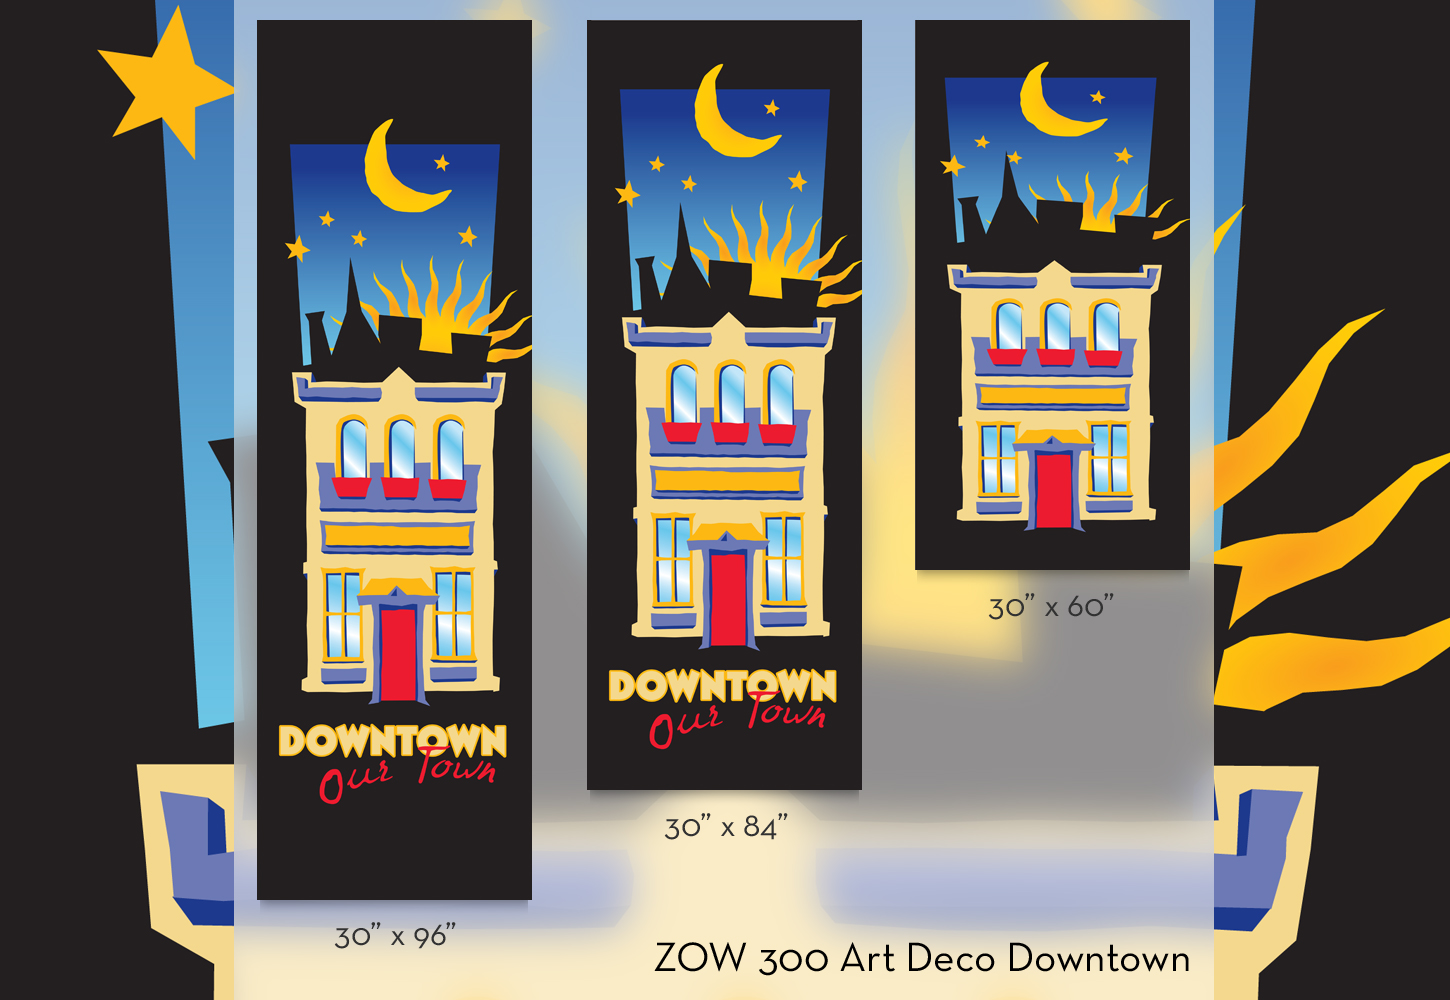 ZOW 300 Art Deco Downtown